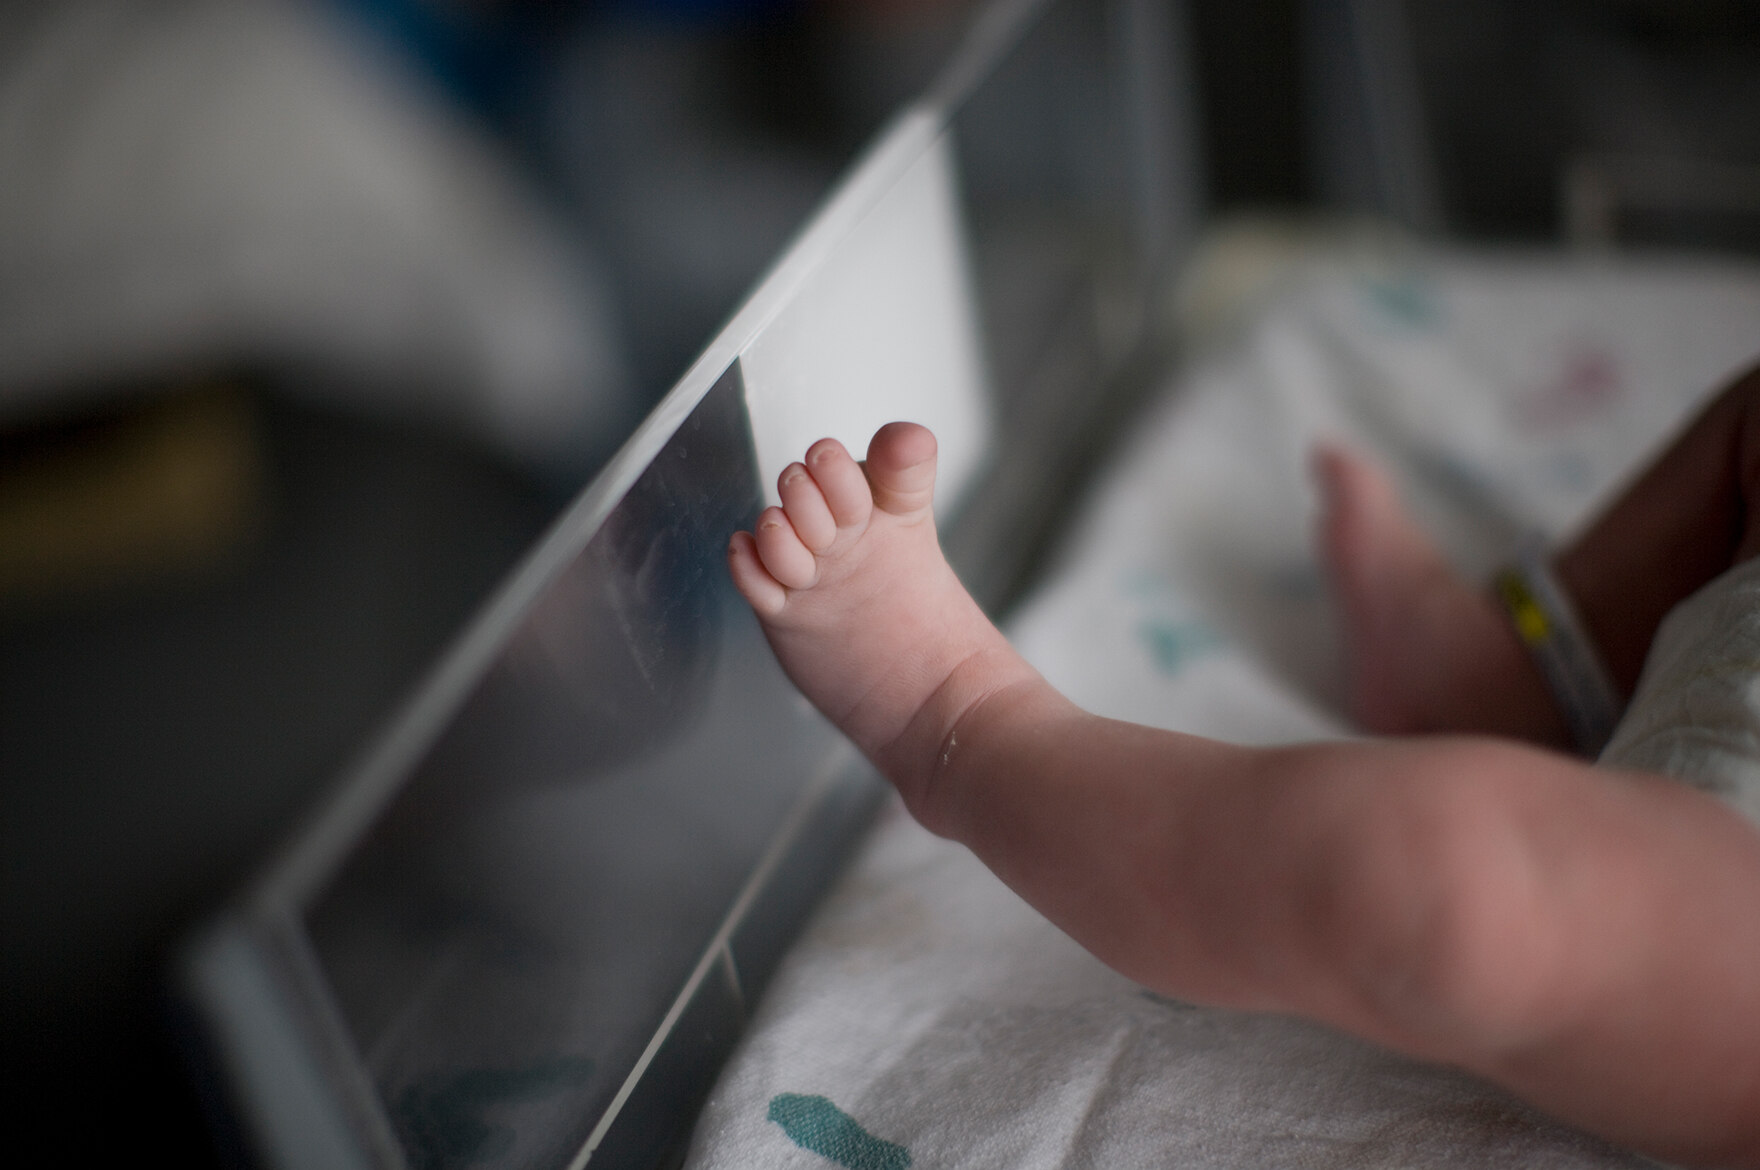 Nackte, strampelnde Beinchen eines Säuglings in einem Neugeborenenbett